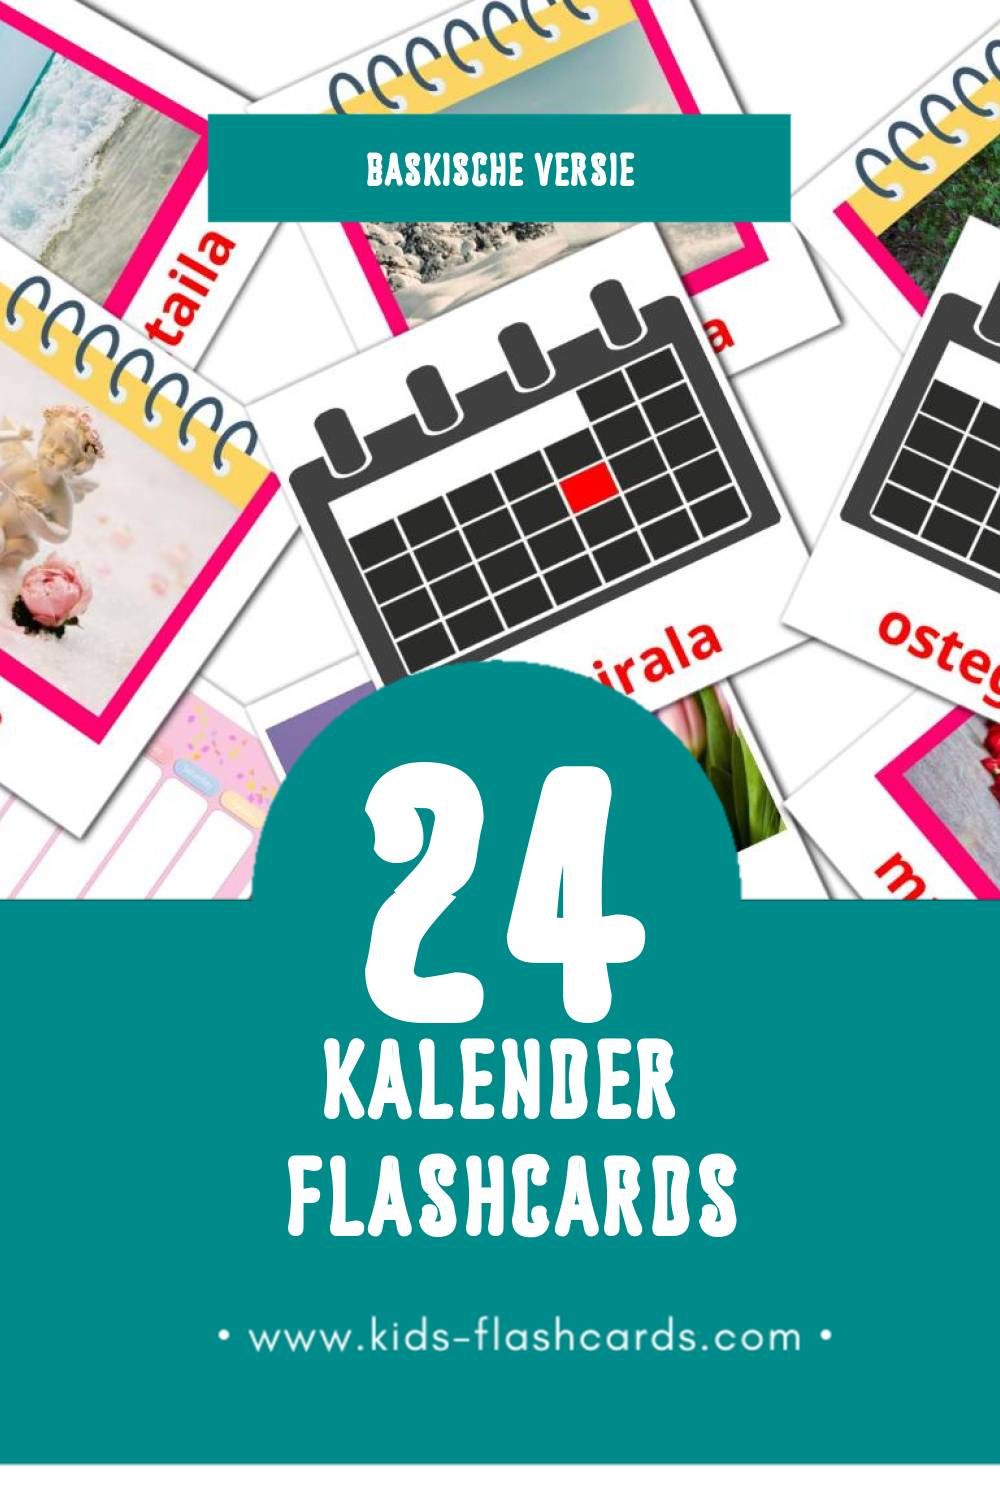 Visuele Egutegia Flashcards voor Kleuters (24 kaarten in het Baskisch)